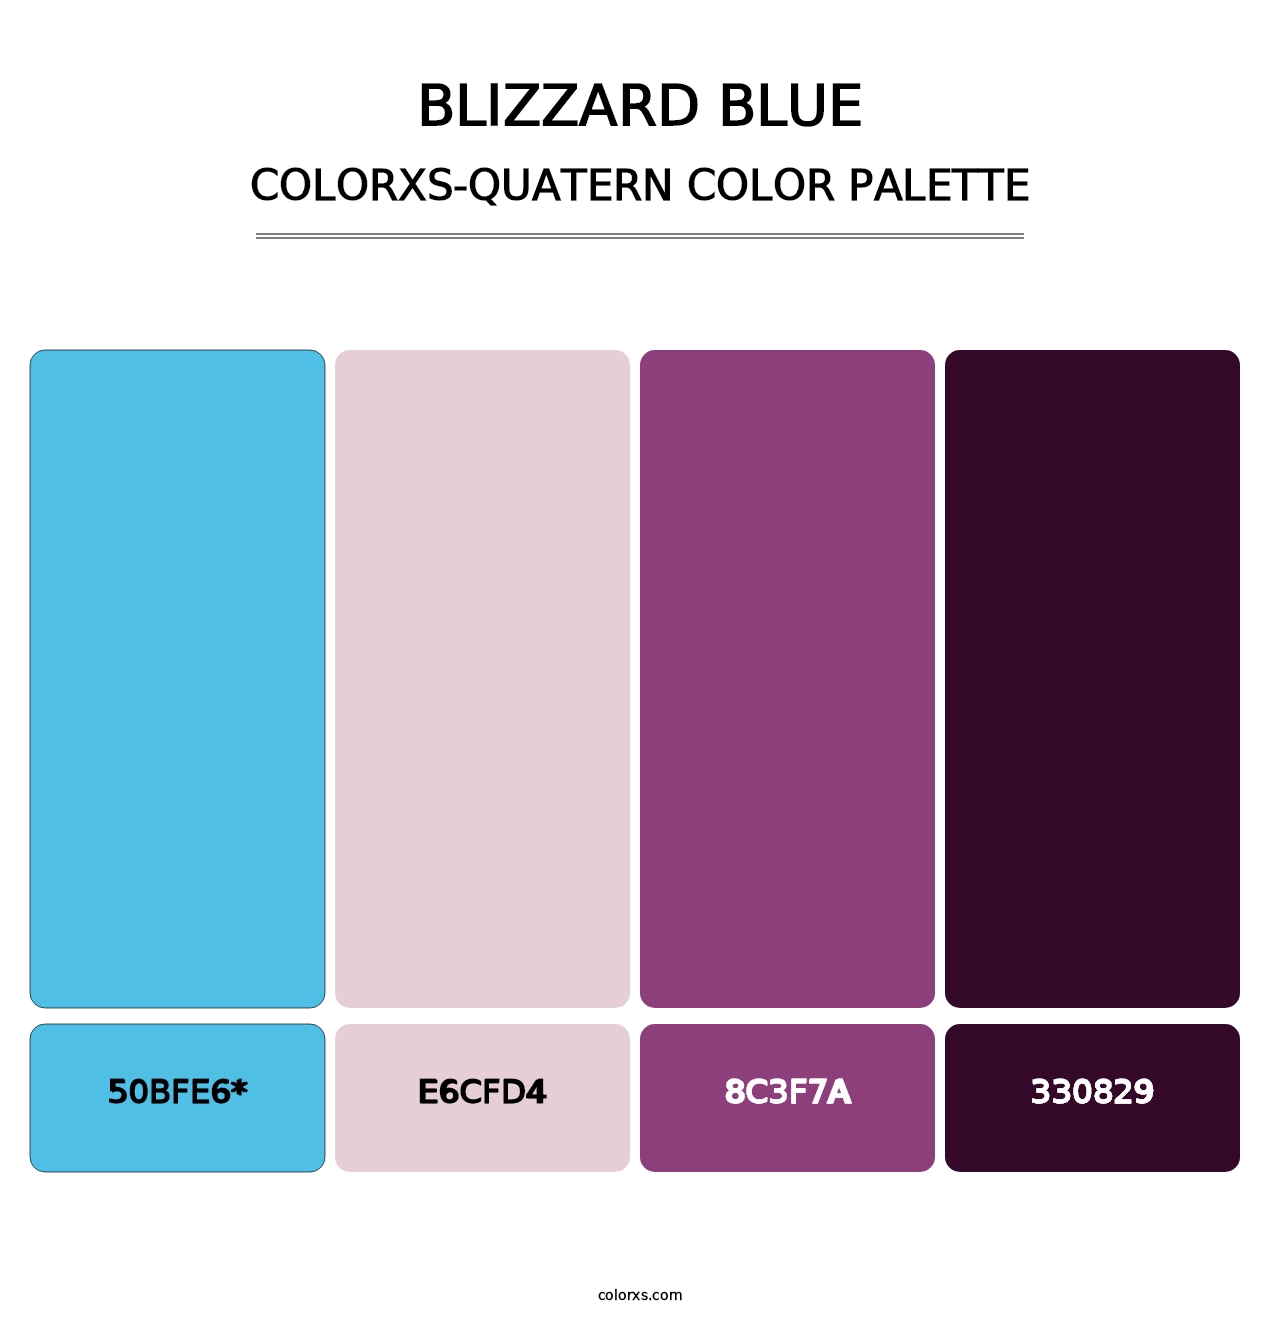 Blizzard Blue - Colorxs Quatern Palette